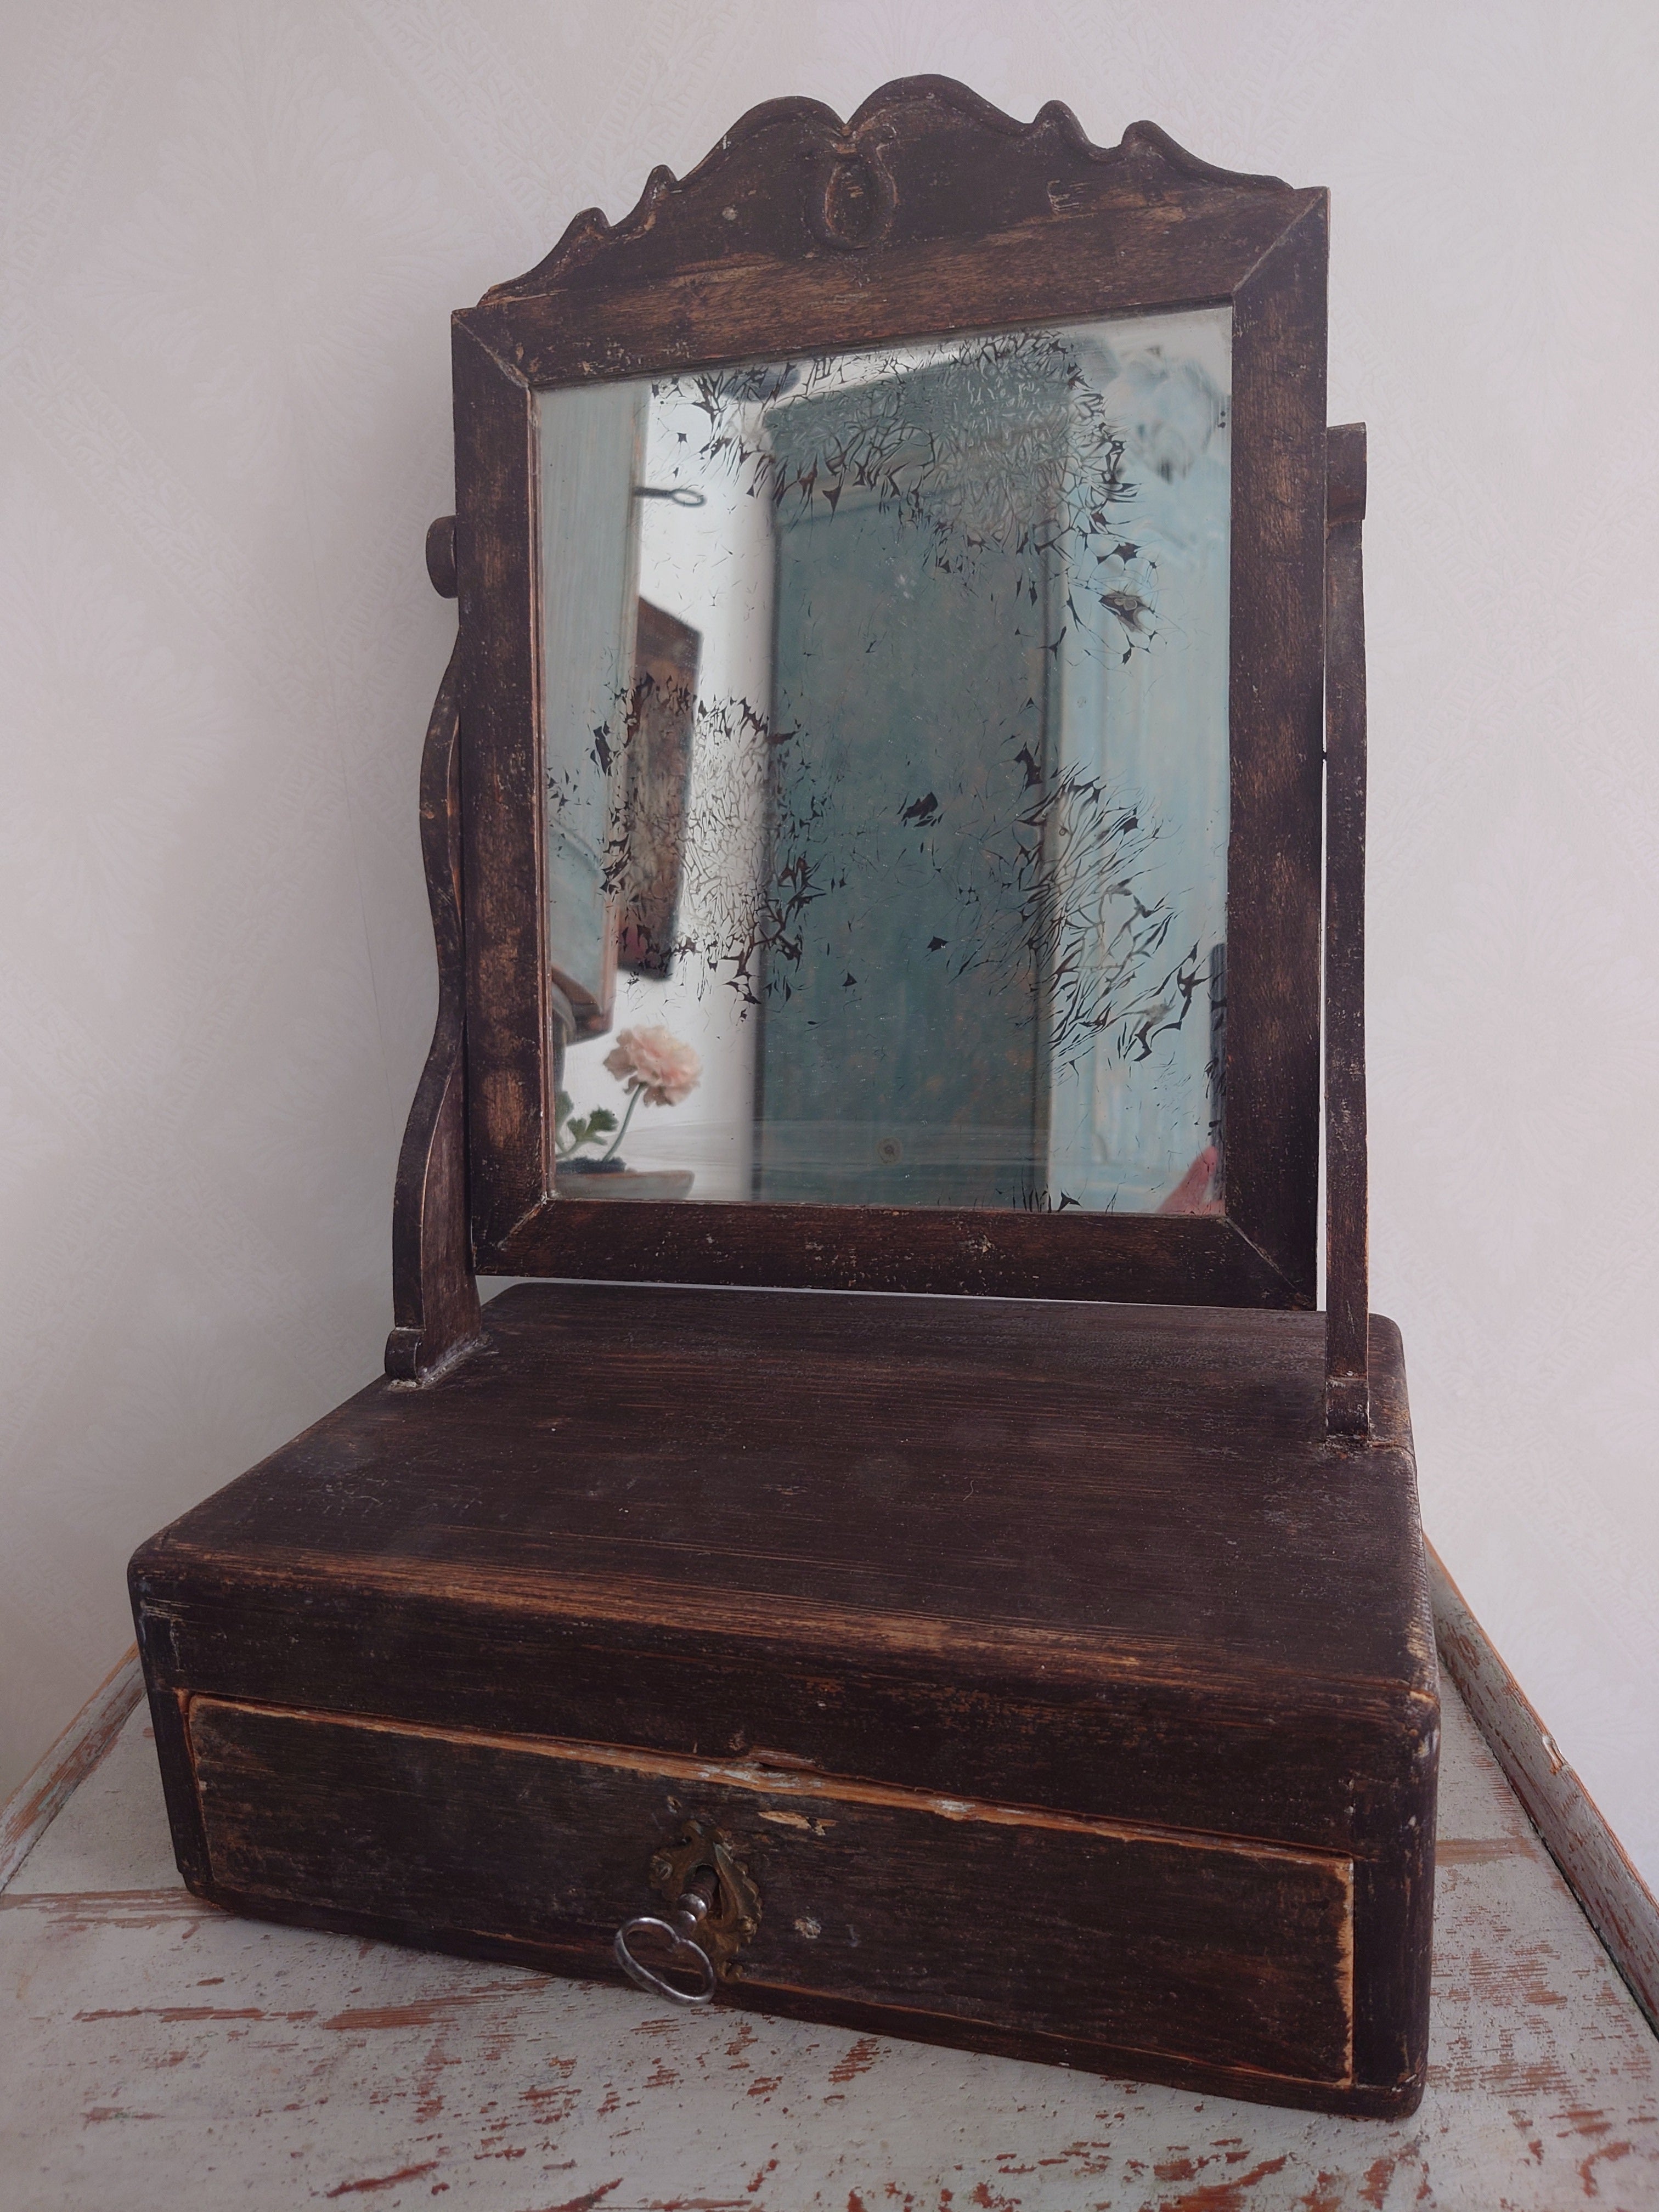 Miroir de courtoisie / miroir de table rustique suédois du 19e siècle, daté de 1870.
Le miroir présente de jolis détails sculptés sur le dessus.
 Cette peinture originale  Le miroir dispose d'un tiroir où l'on peut ranger peigne, brosse ou autres